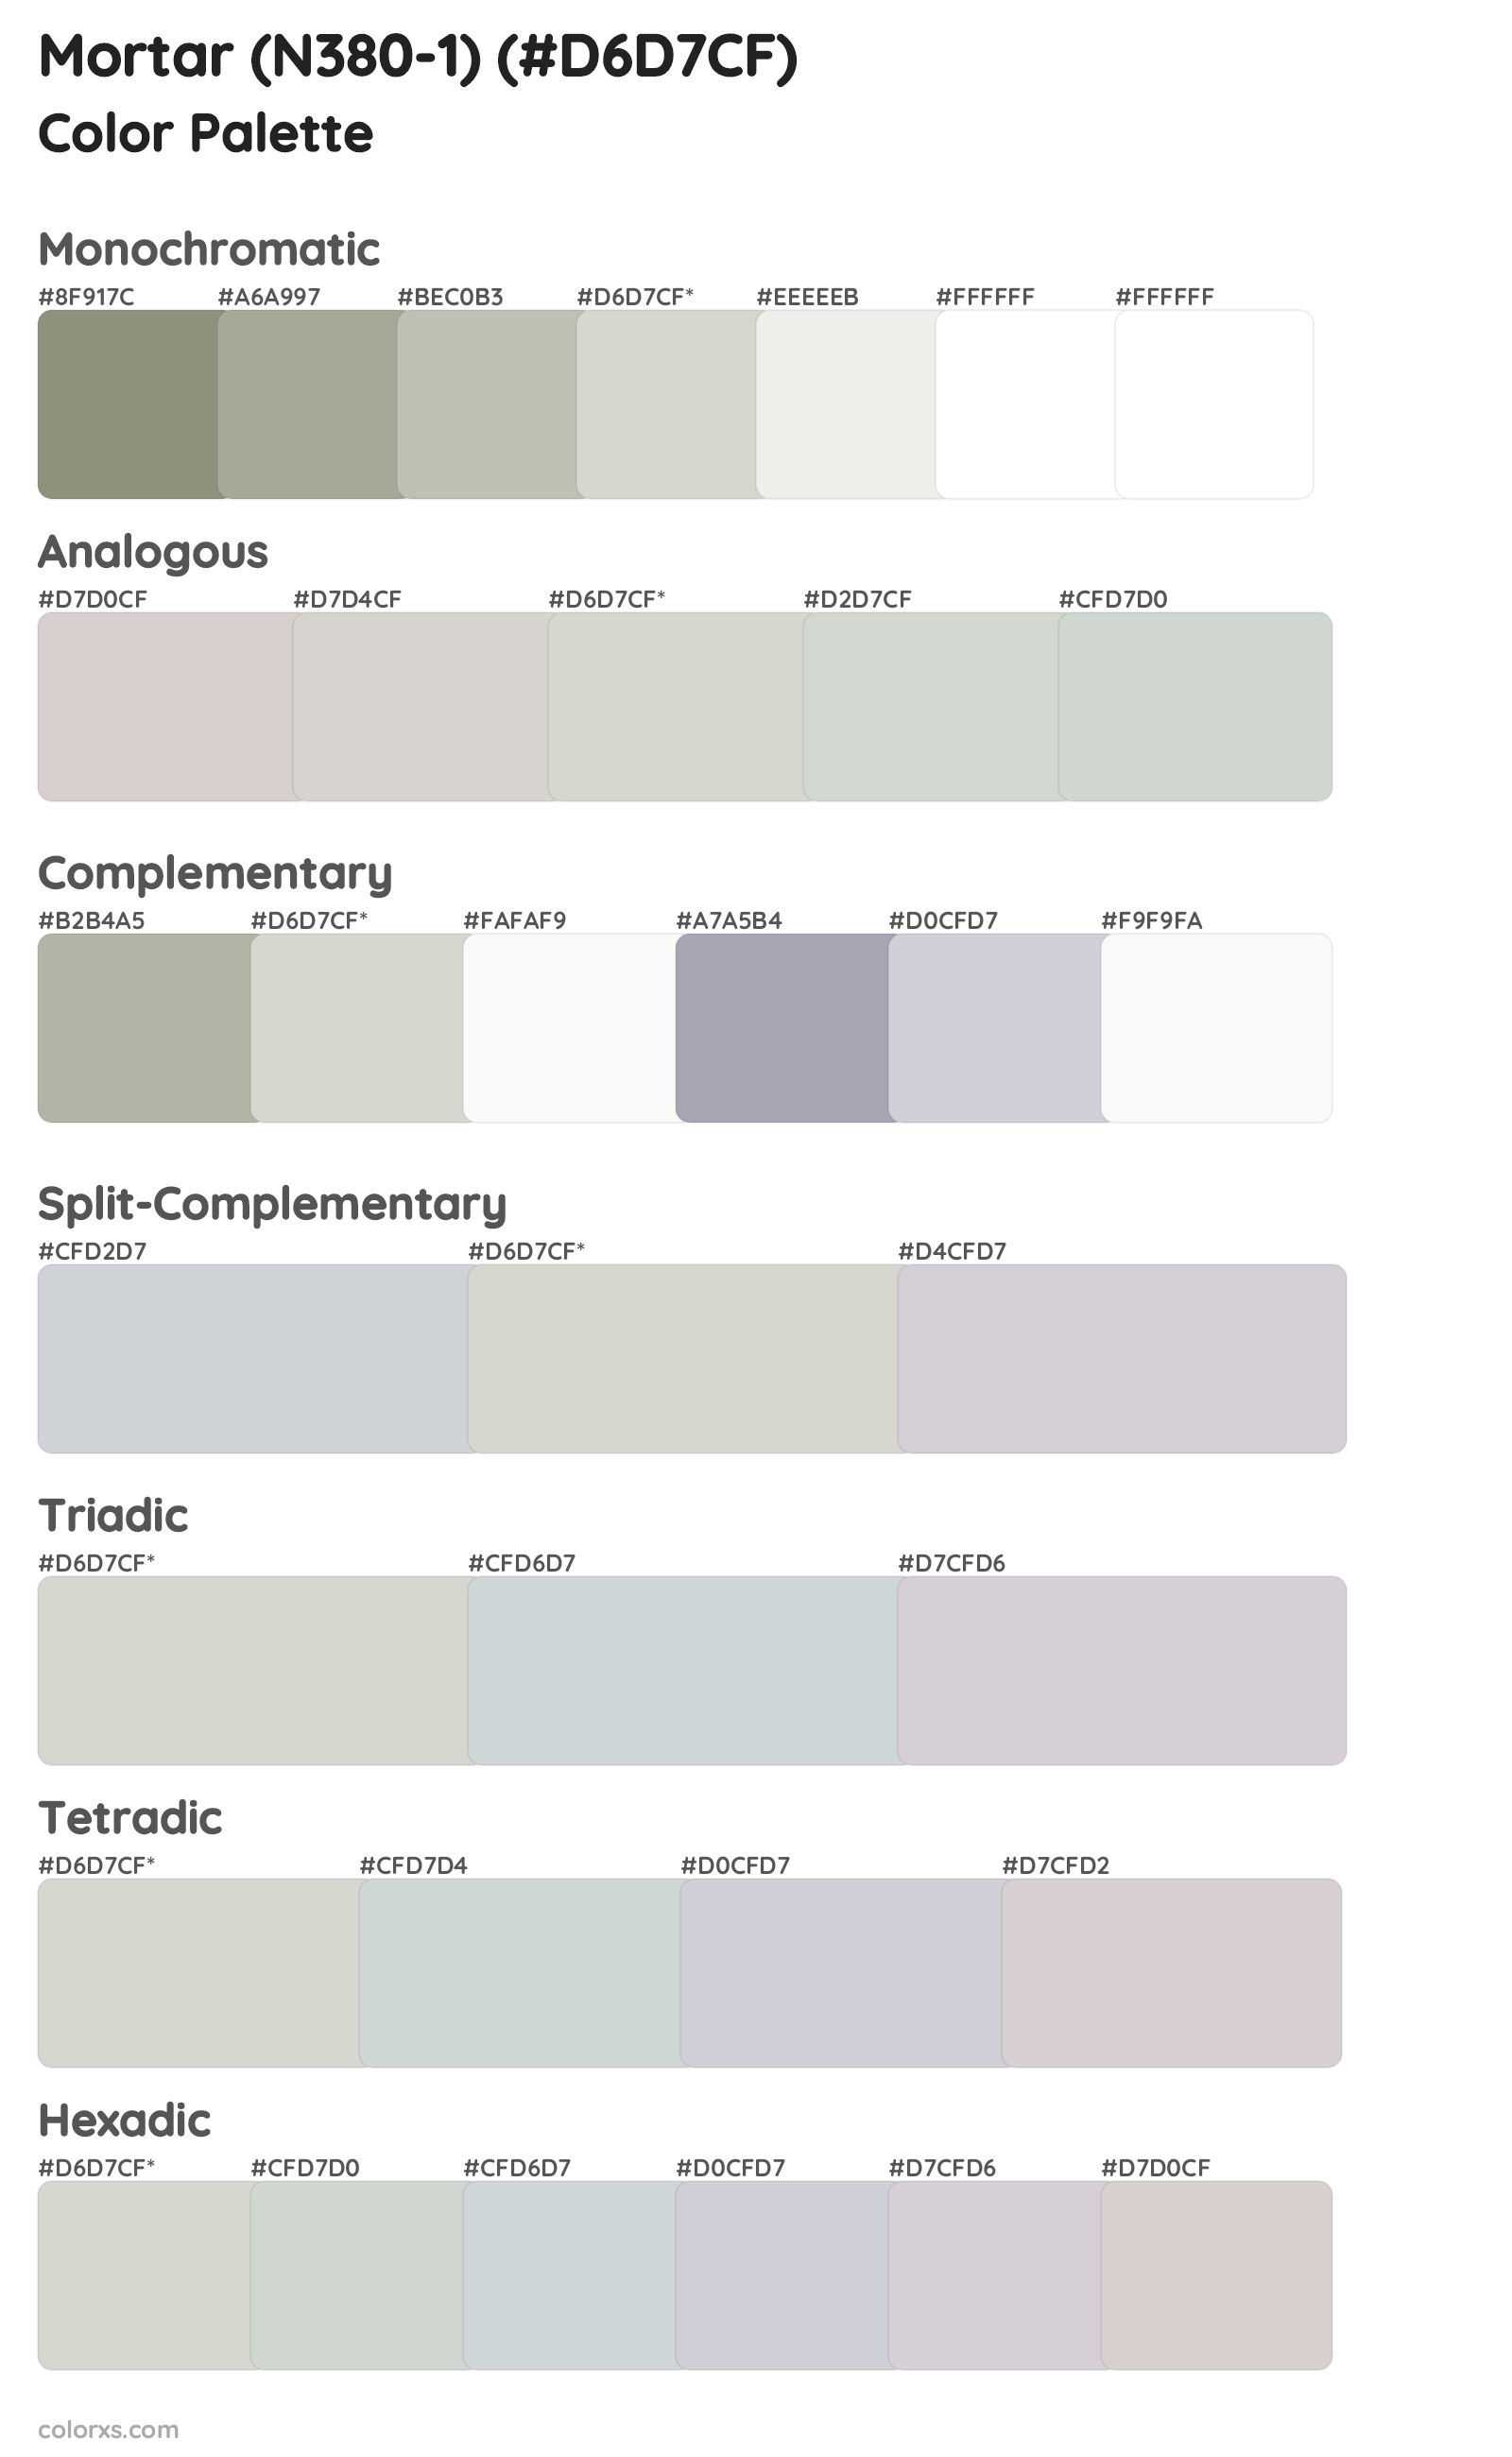 Mortar (N380-1) Color Scheme Palettes